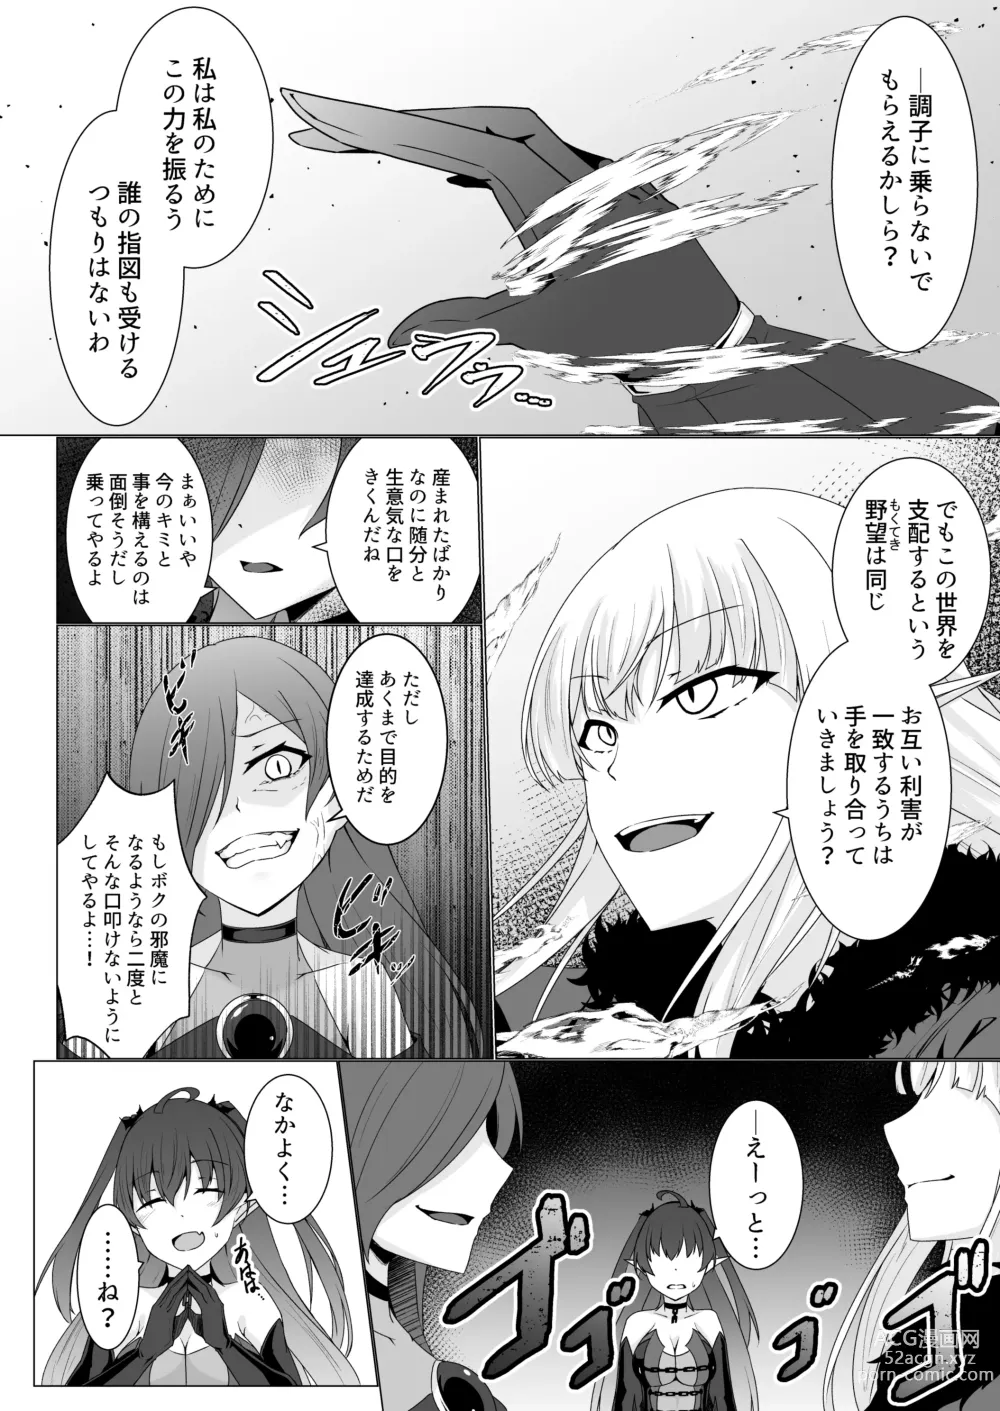 Page 39 of doujinshi Kyouka Senki Aria ~Kowareta Sekai ni Hibiku Dokusou Kyoku~